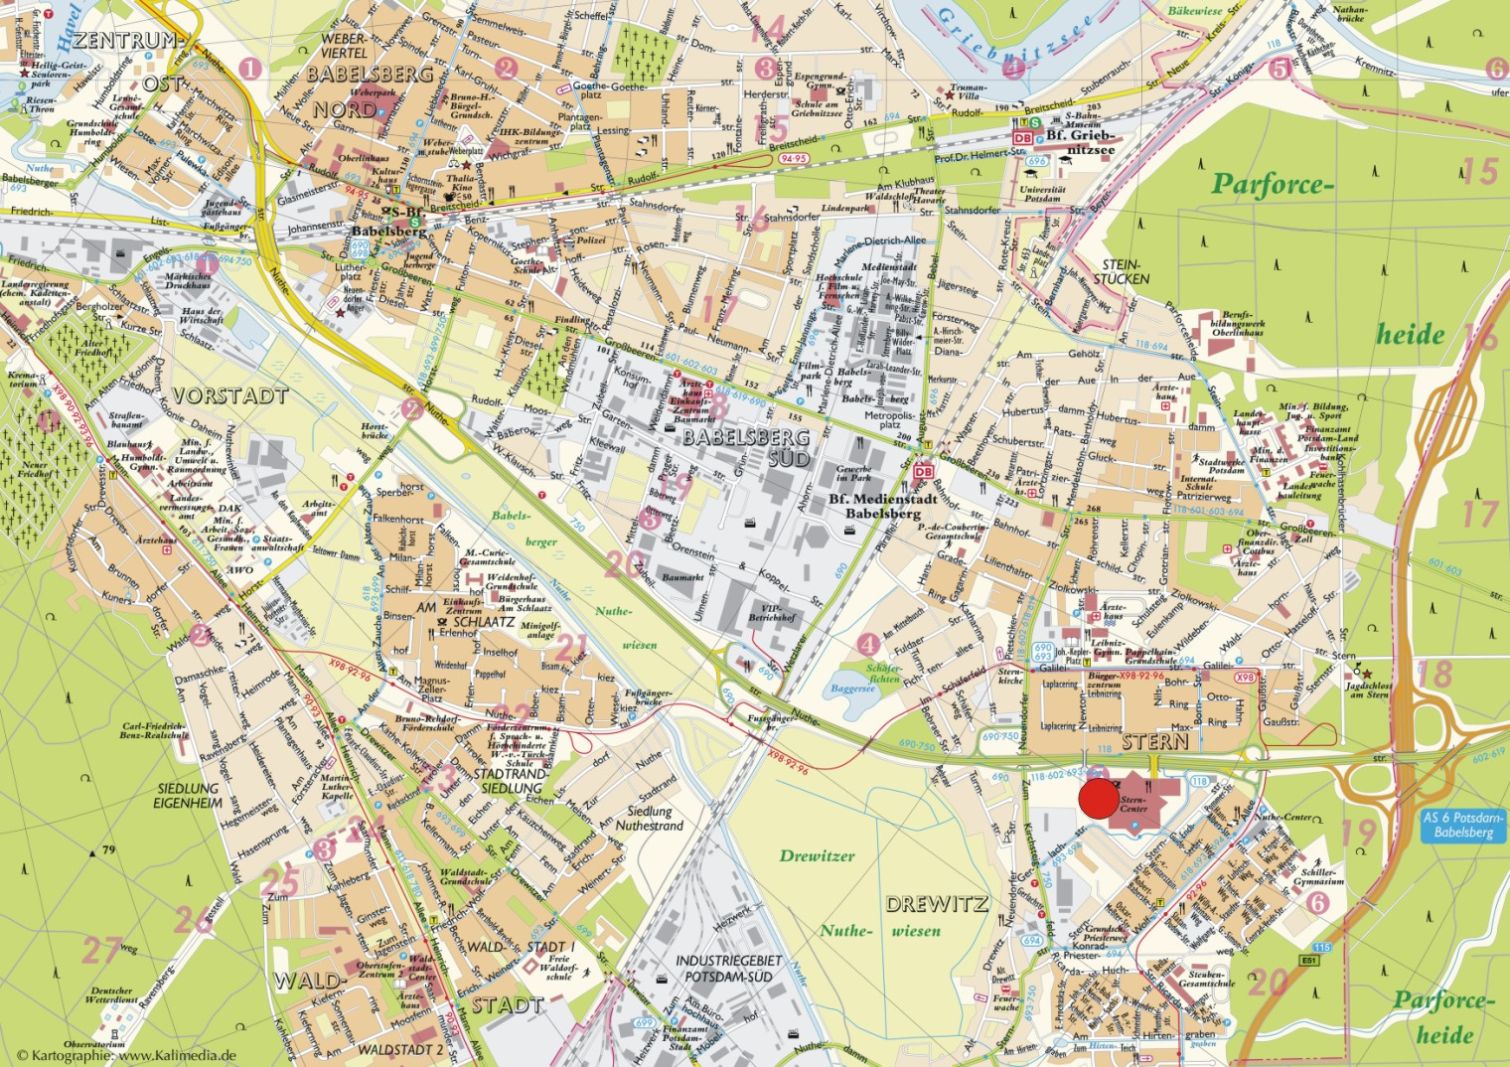 Potsdam center karte